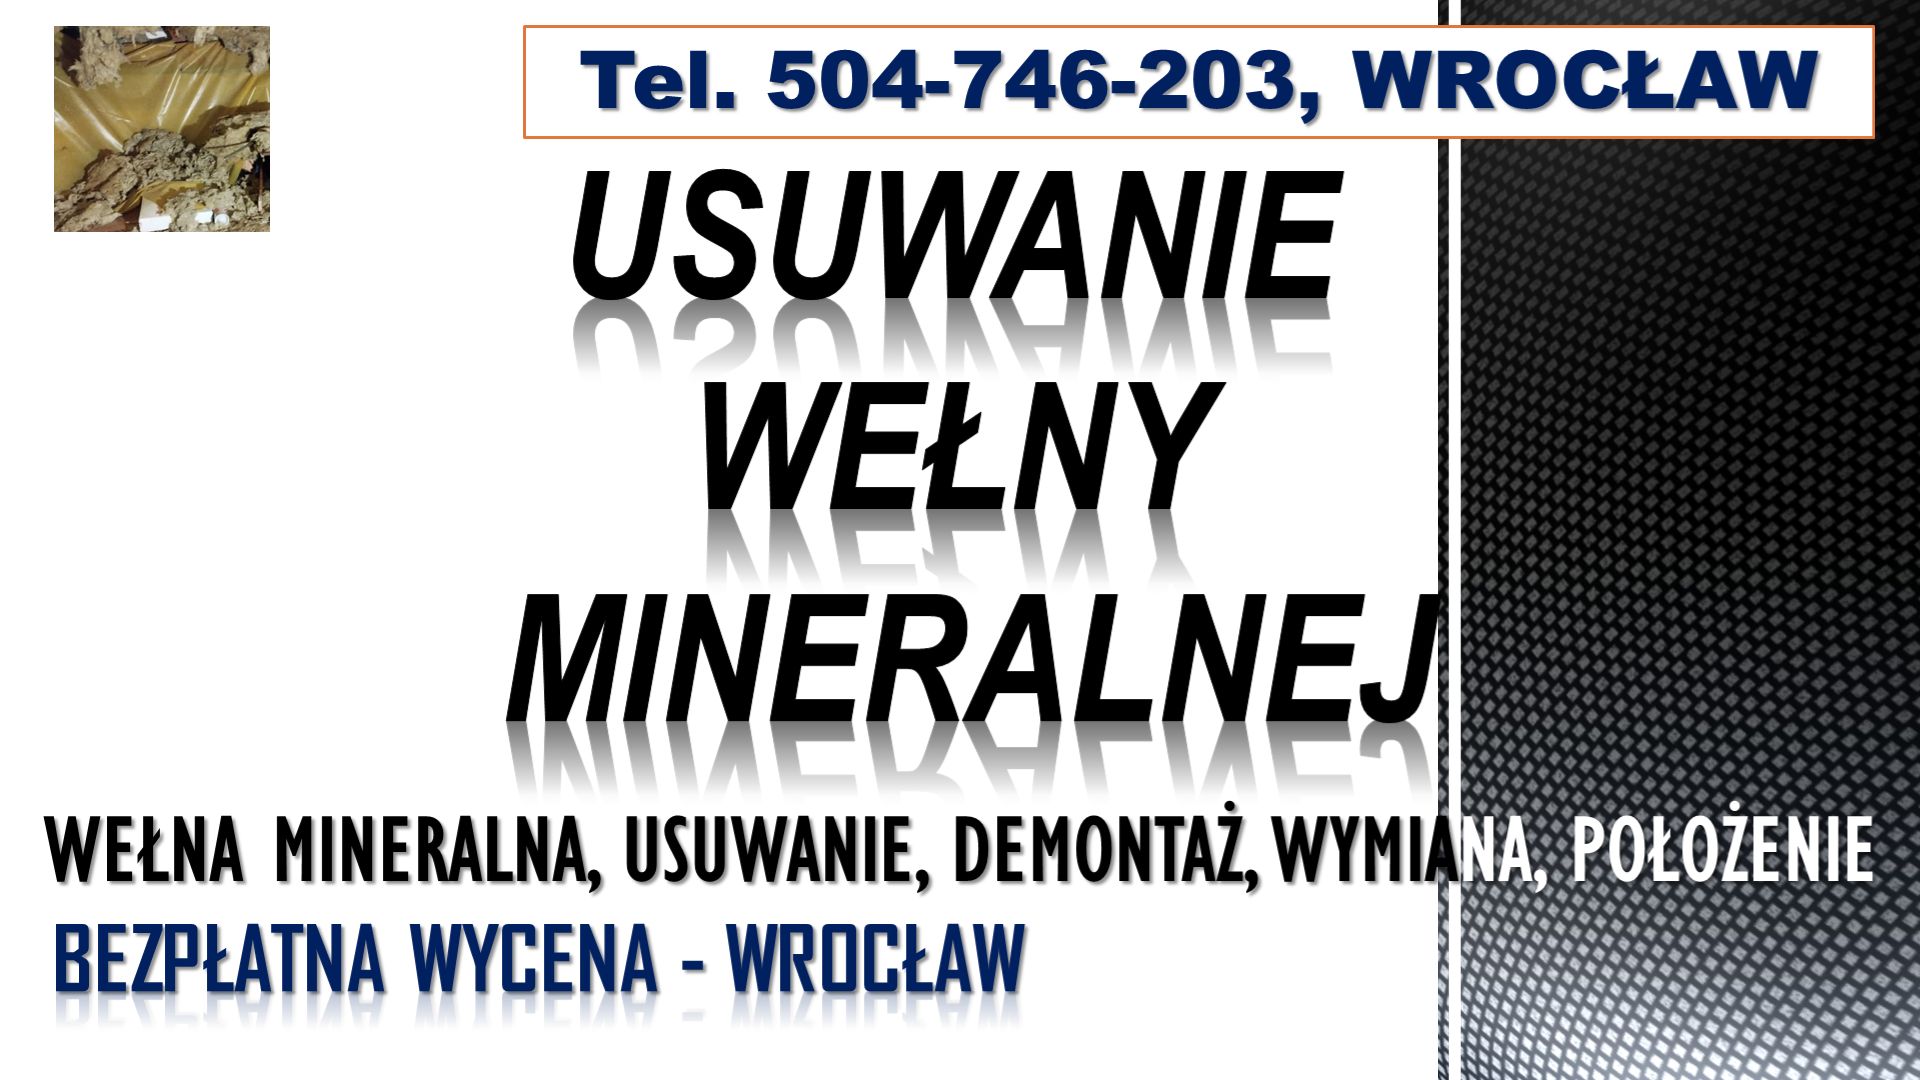 Usuwanie wełny mineralnej, cena, tel. Wrocław, demontaż, naprawa